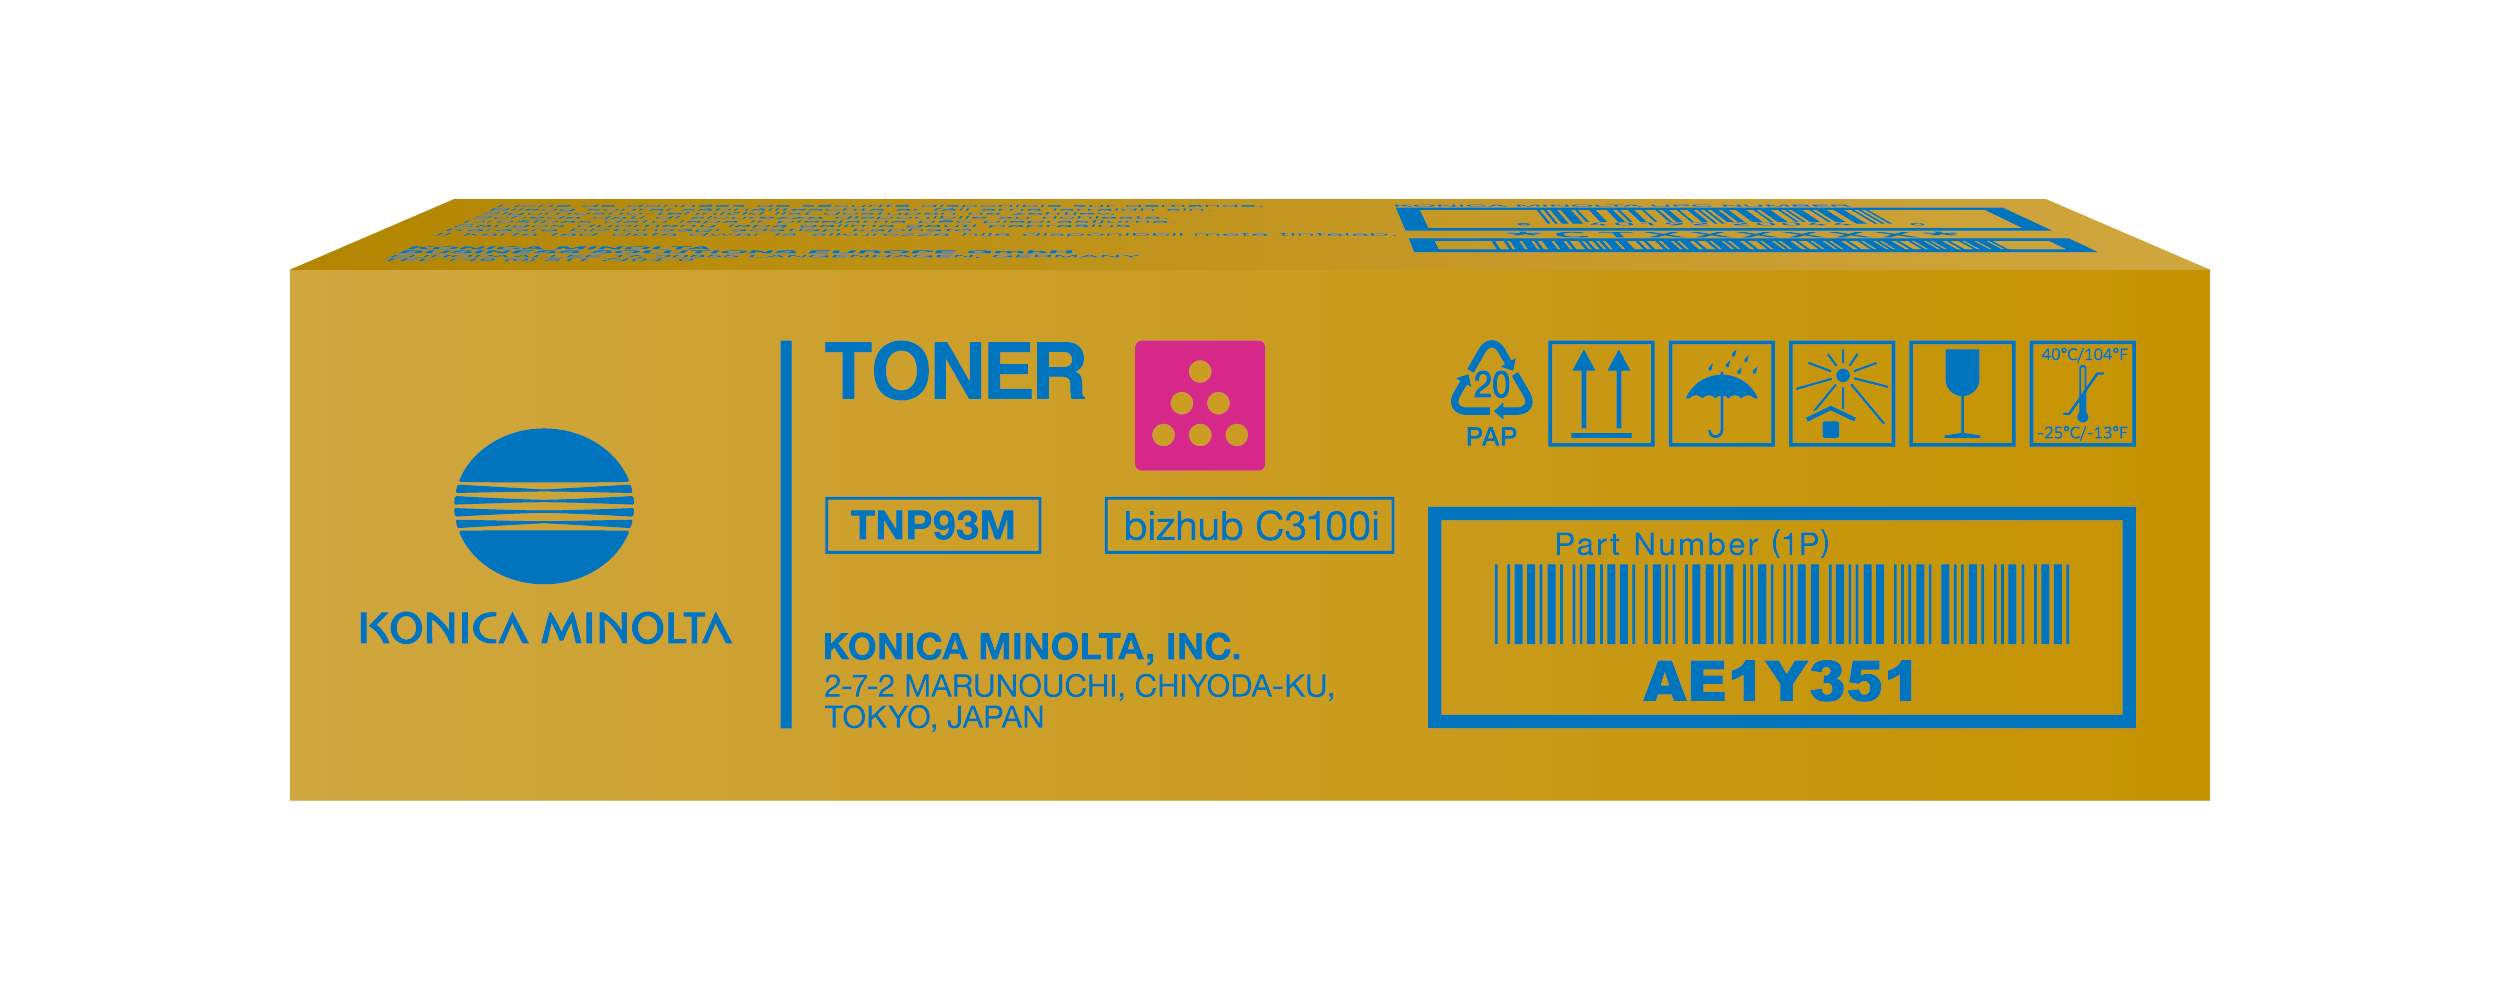 Toner Magenta pour bizhub C3100i - TNP93M